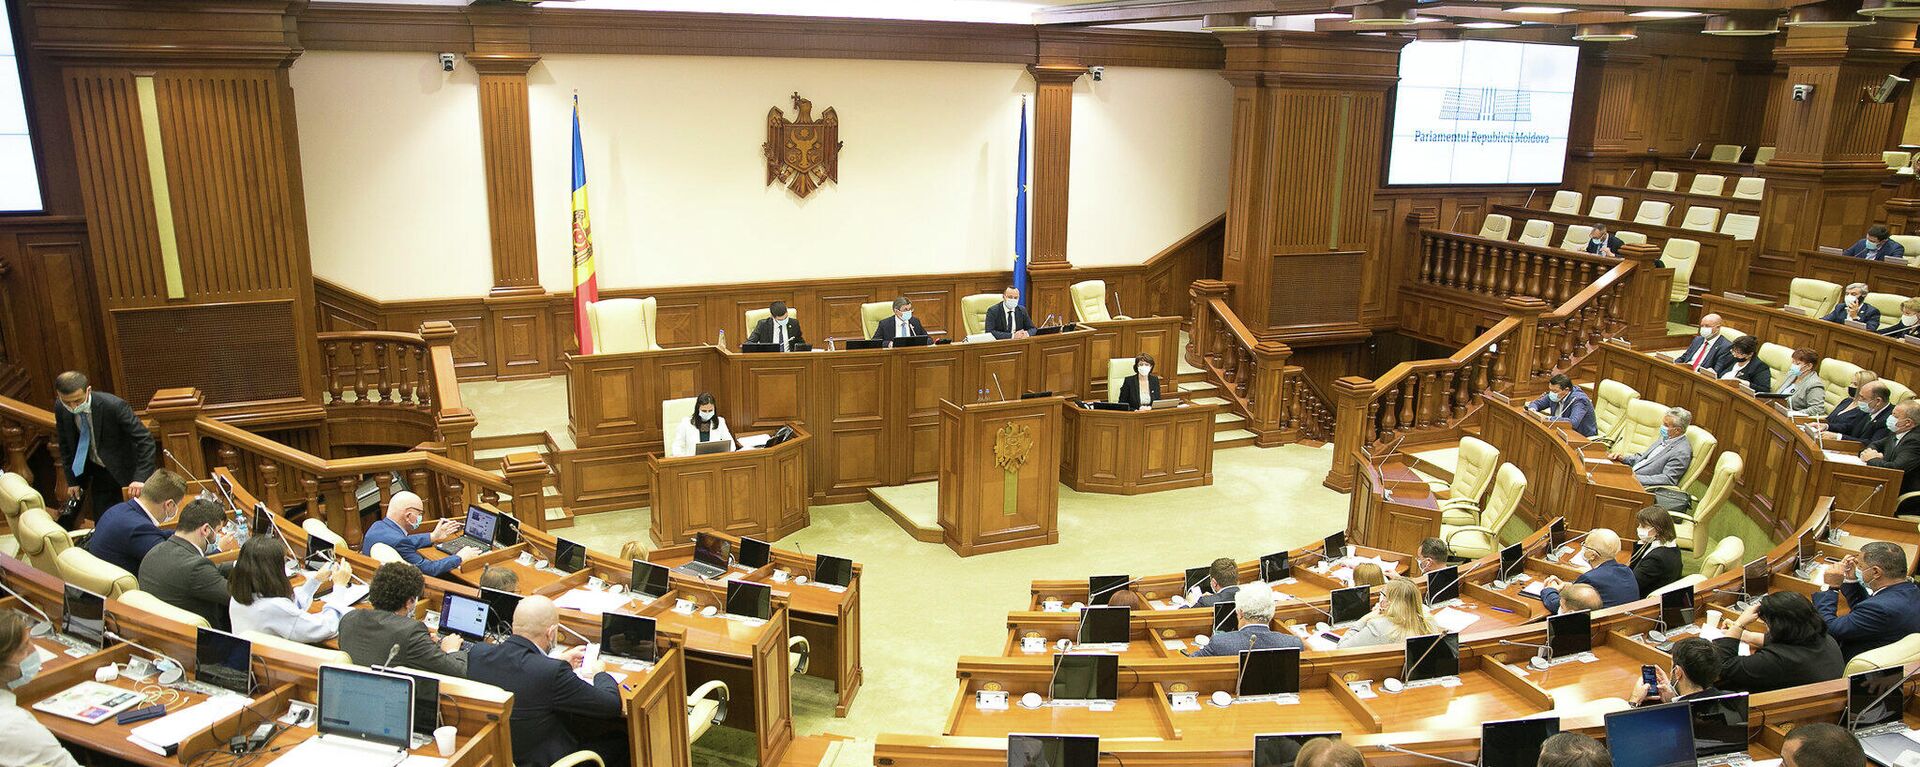 Ședința #LIVE a Parlamentului Moldovei din 23 septembrie 2021 - Sputnik Moldova, 1920, 23.09.2021